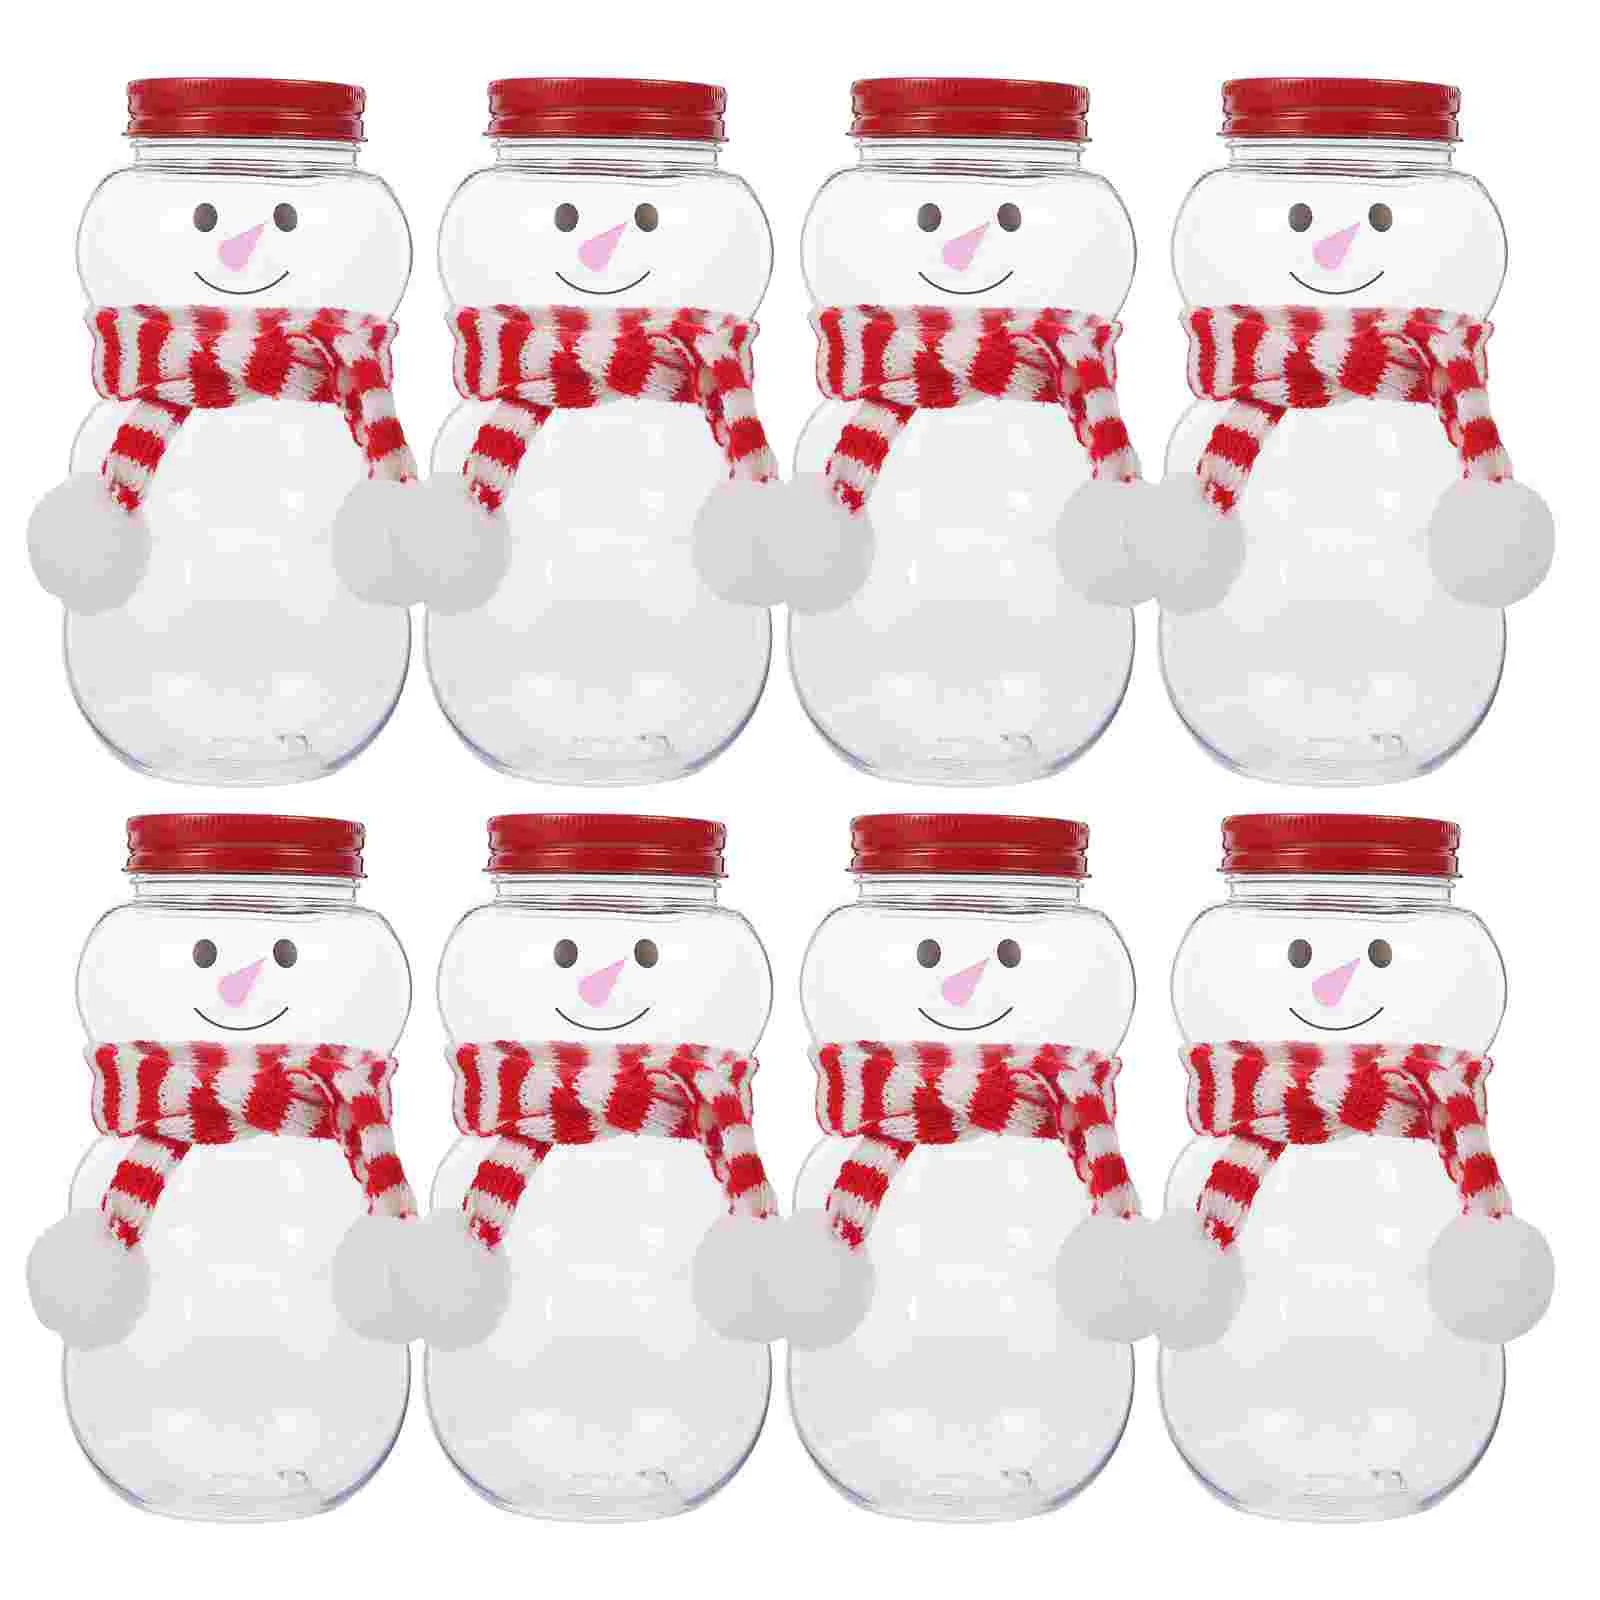 

10 комплектов рождественских бутылок для сока со снеговиком, контейнеры для напитков, бутылки для молока с шарфами